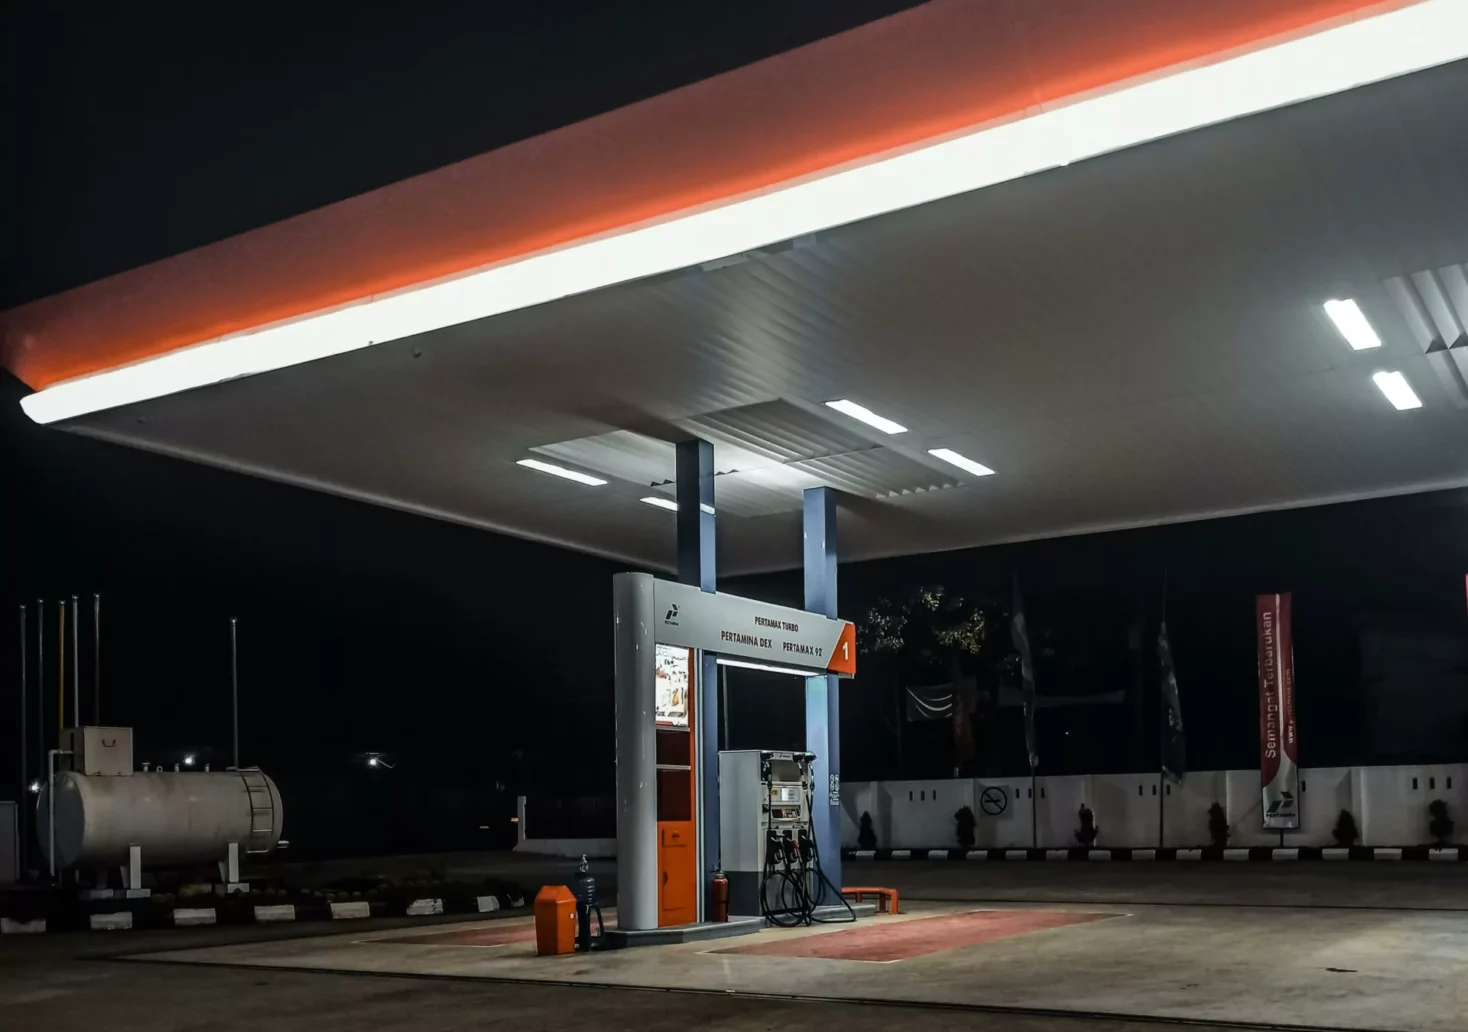 Symbolfoto auf 5min.at zeigt eine Tankstelle bei Nacht.